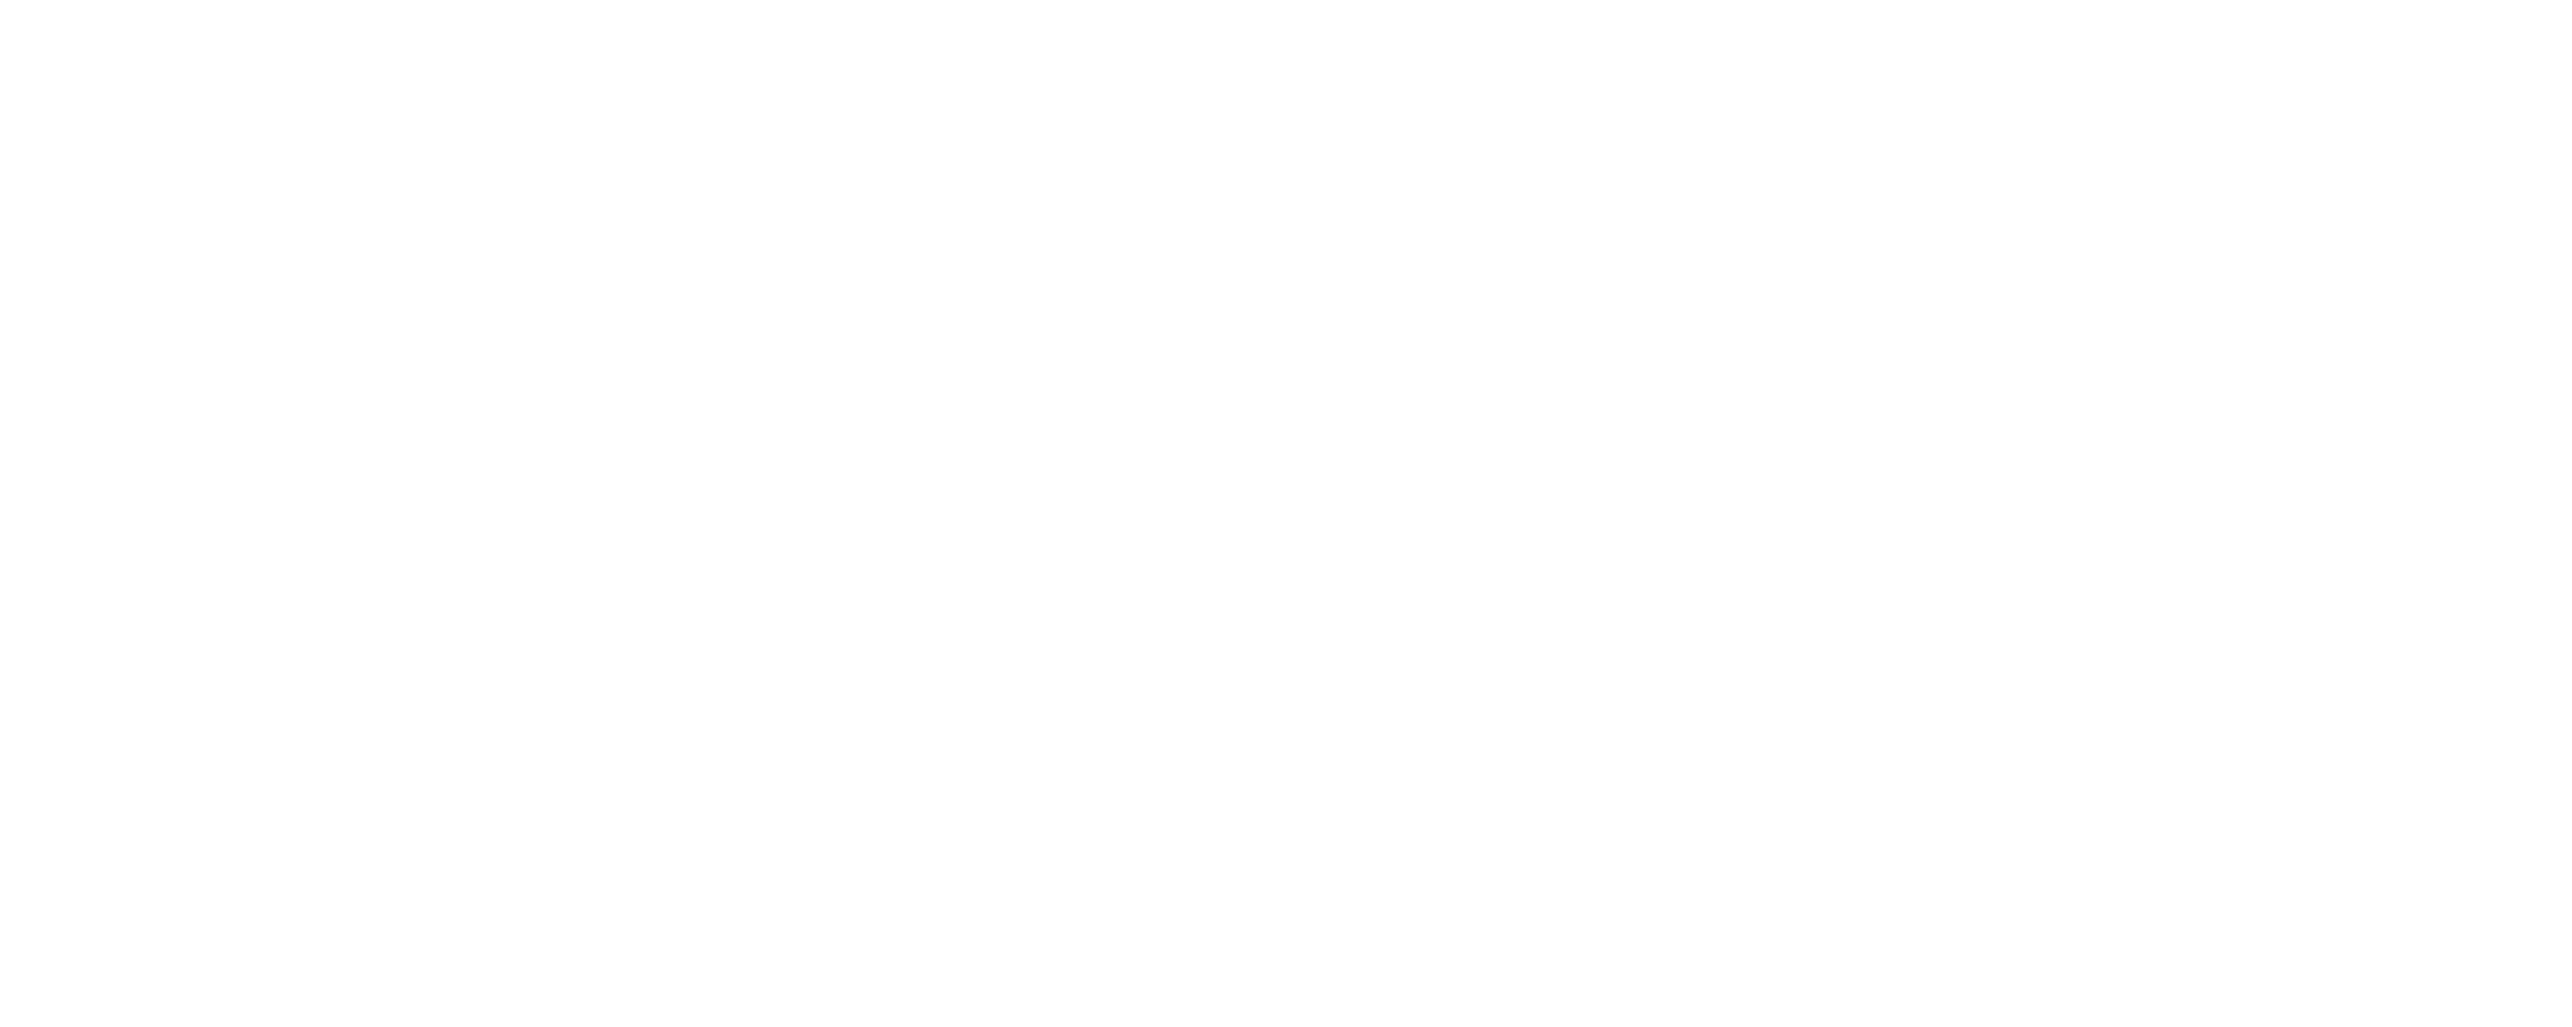 Desai startup accelerator logo in WHITE. Double chevron icon next to text.